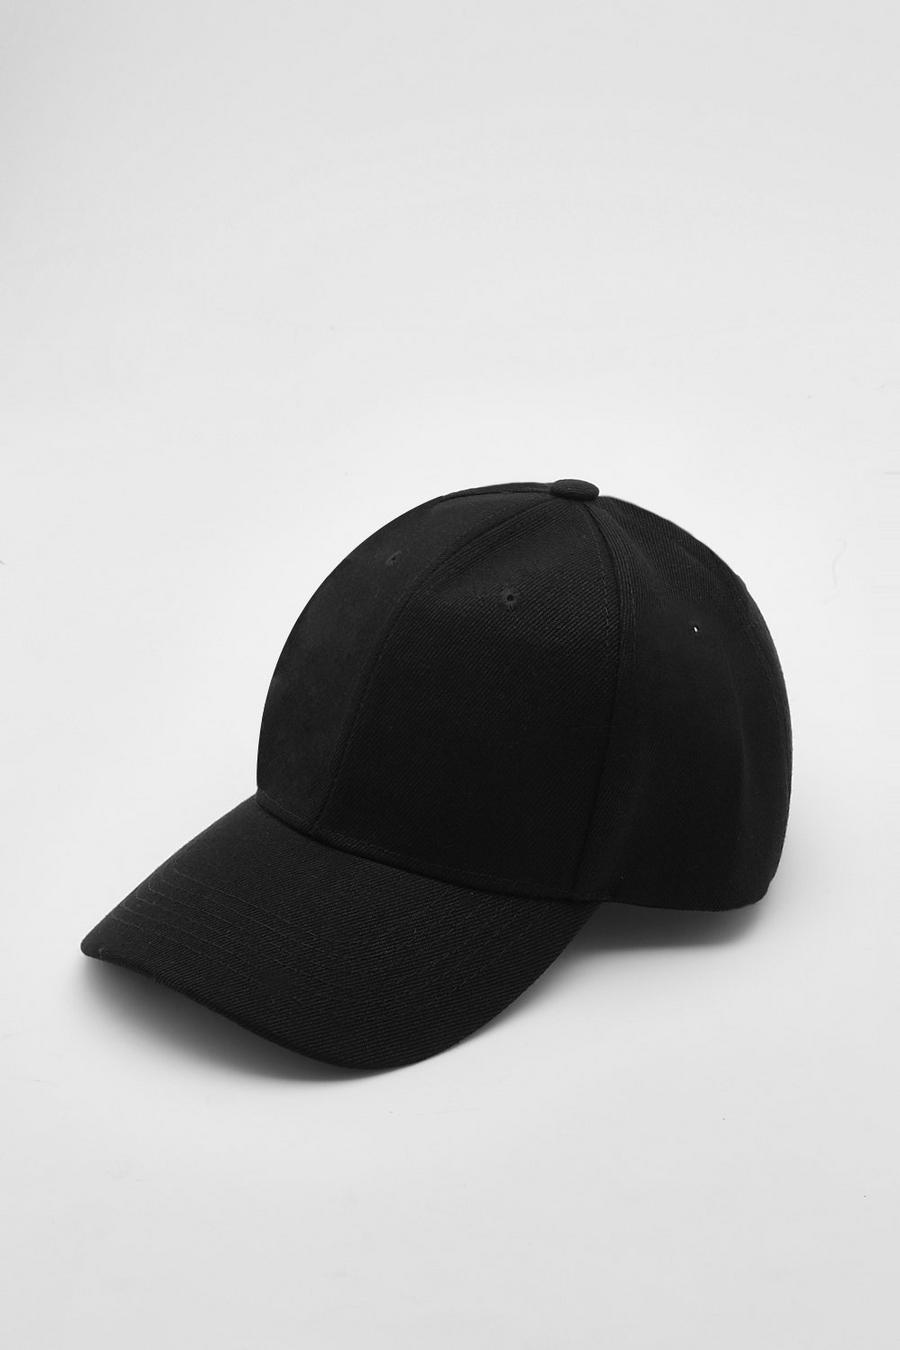 כובע מצחייה חלק שחור בסגנון בייסבול